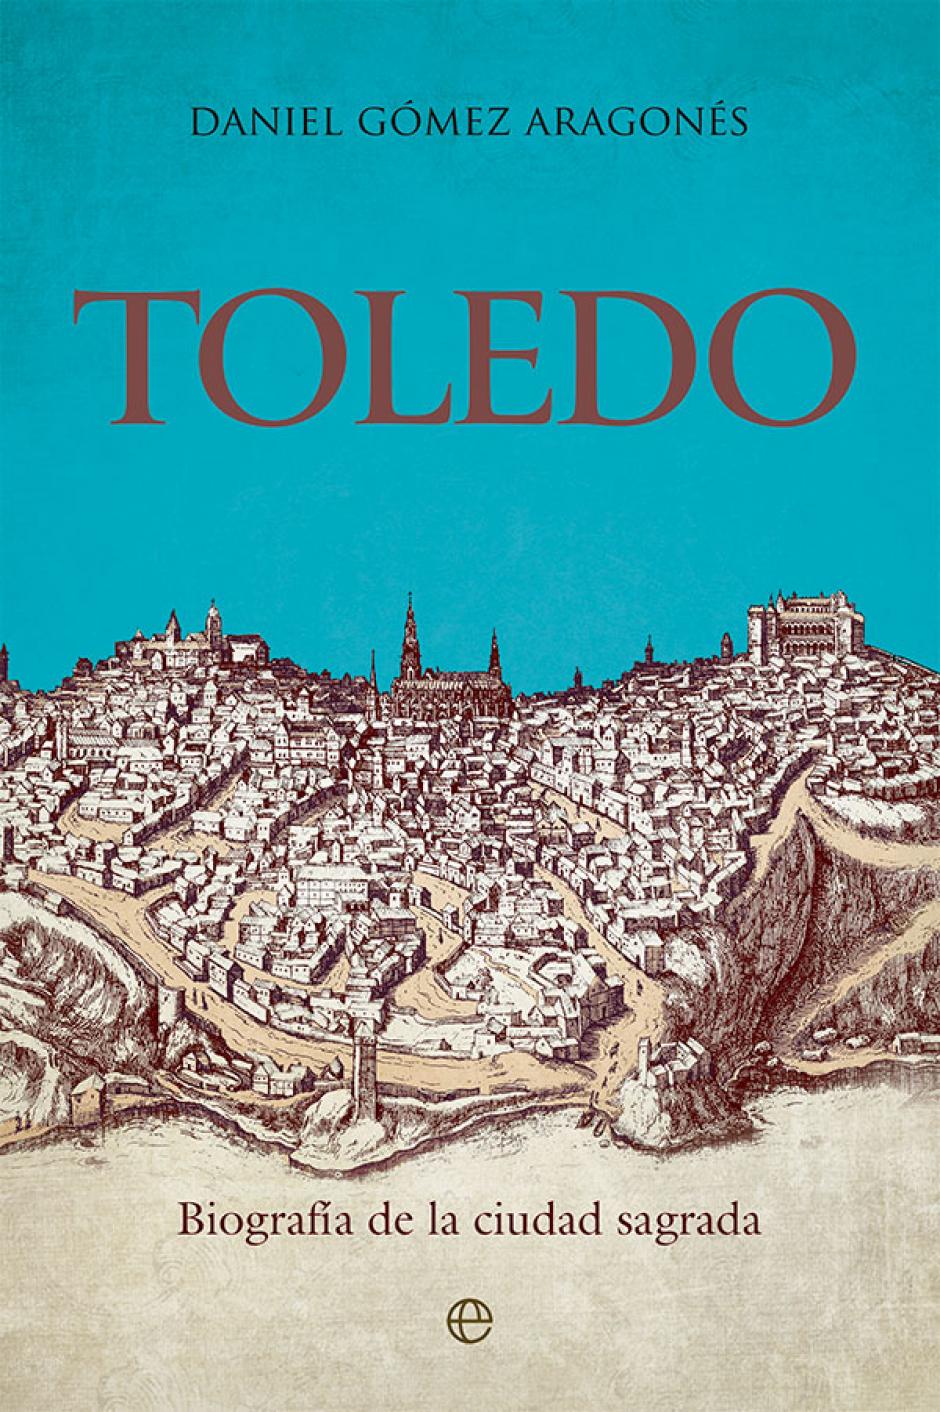 El libro 'Toledo. Biografía de la ciudad sagrada' (La esfera de los libros), de Daniel Gómez Aragonés